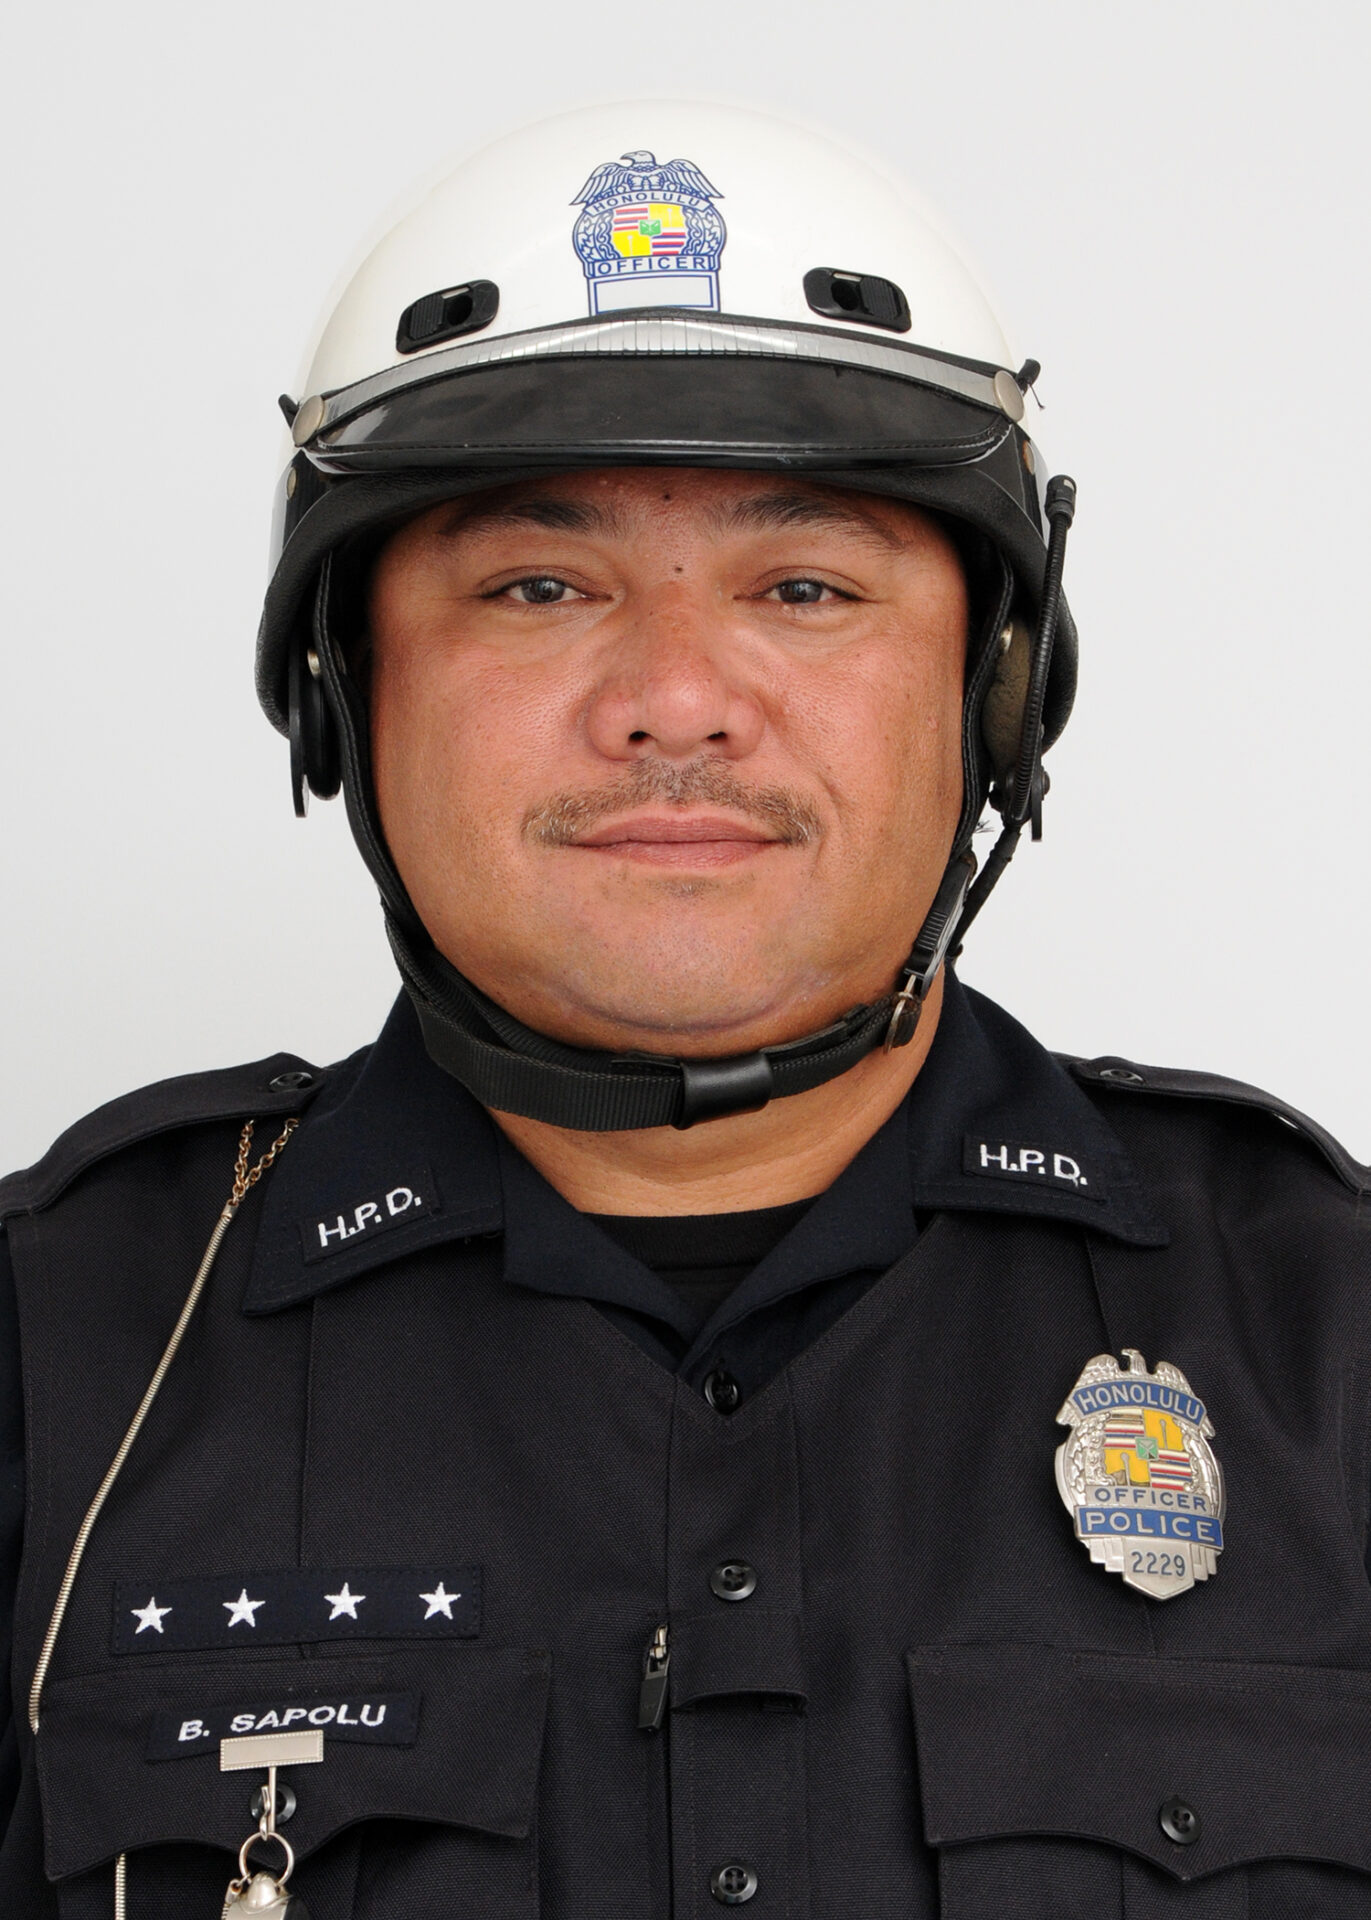 Aloha to Solo Bike Officer Bill Sapolu